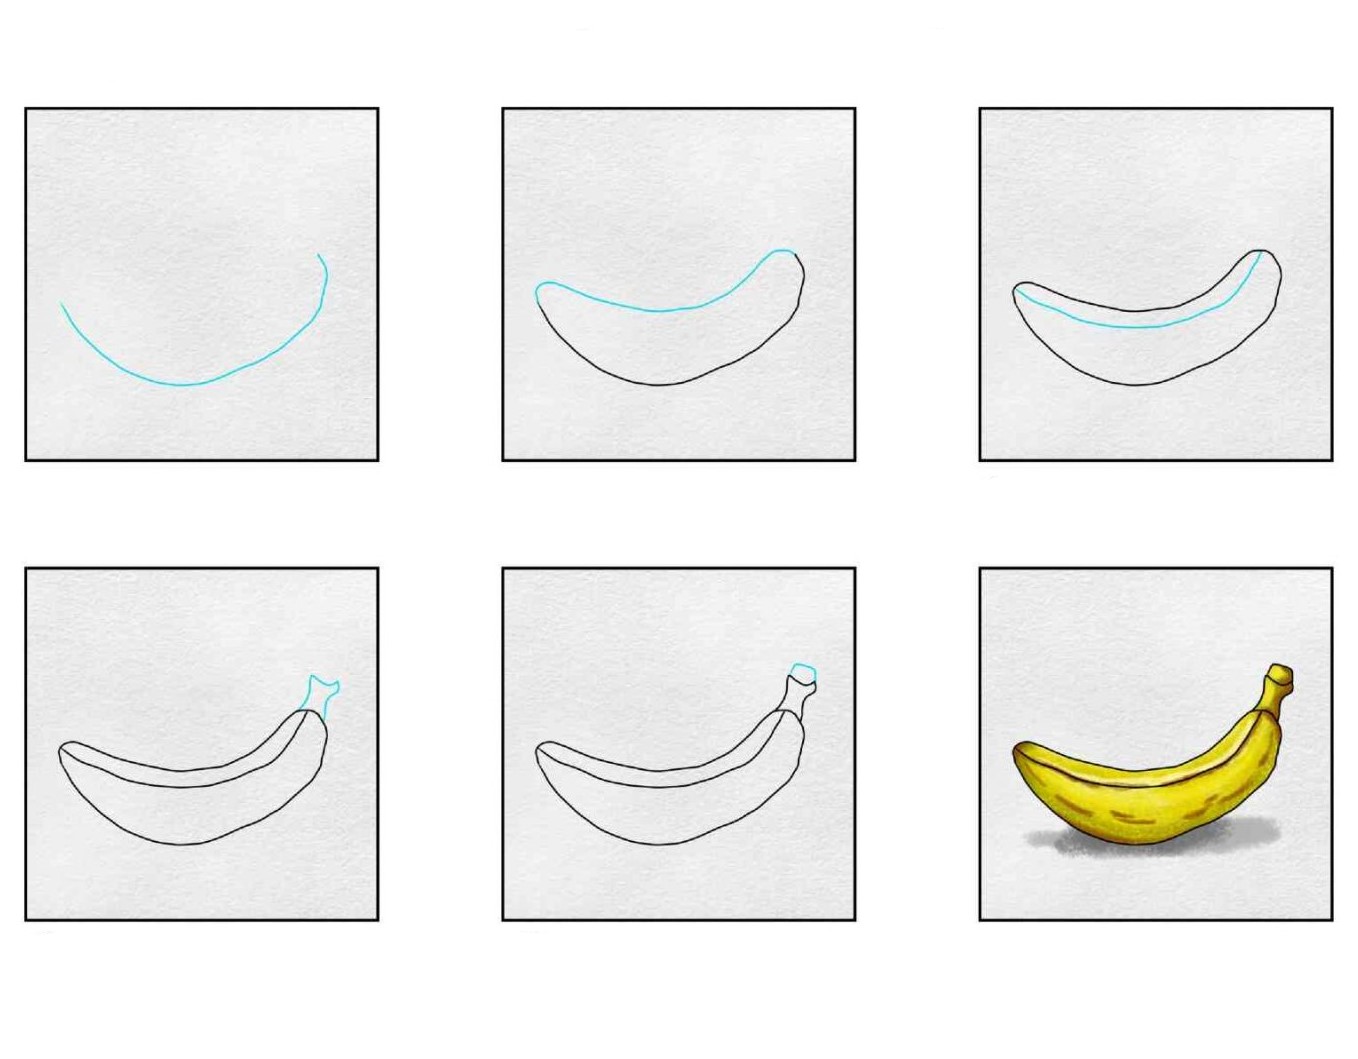 Bananenidee (8) zeichnen ideen